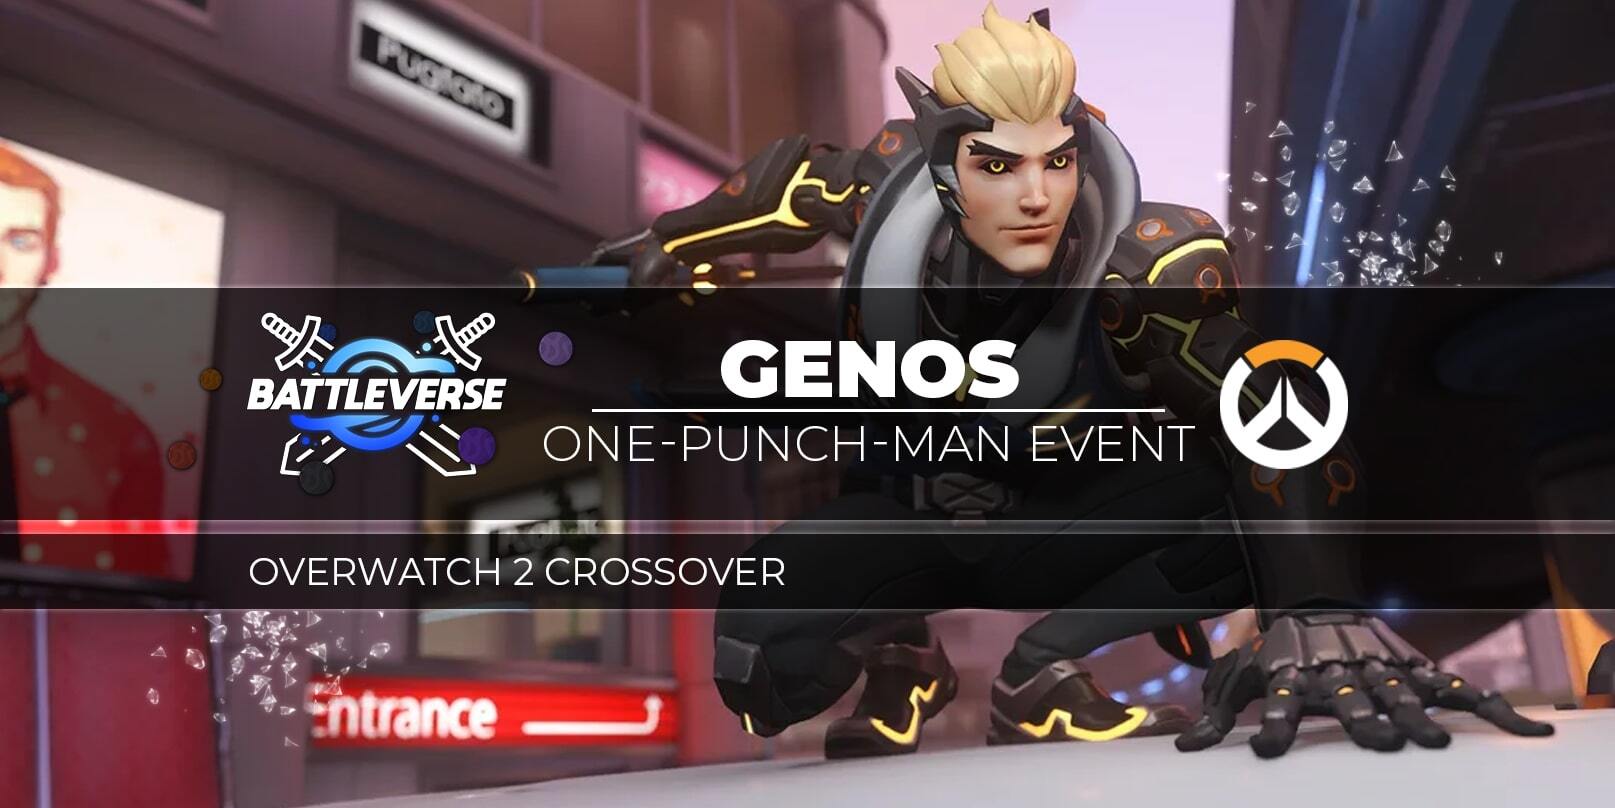 Nova skin Genos-Genji fará parte do crossover entre Overwatch 2 e